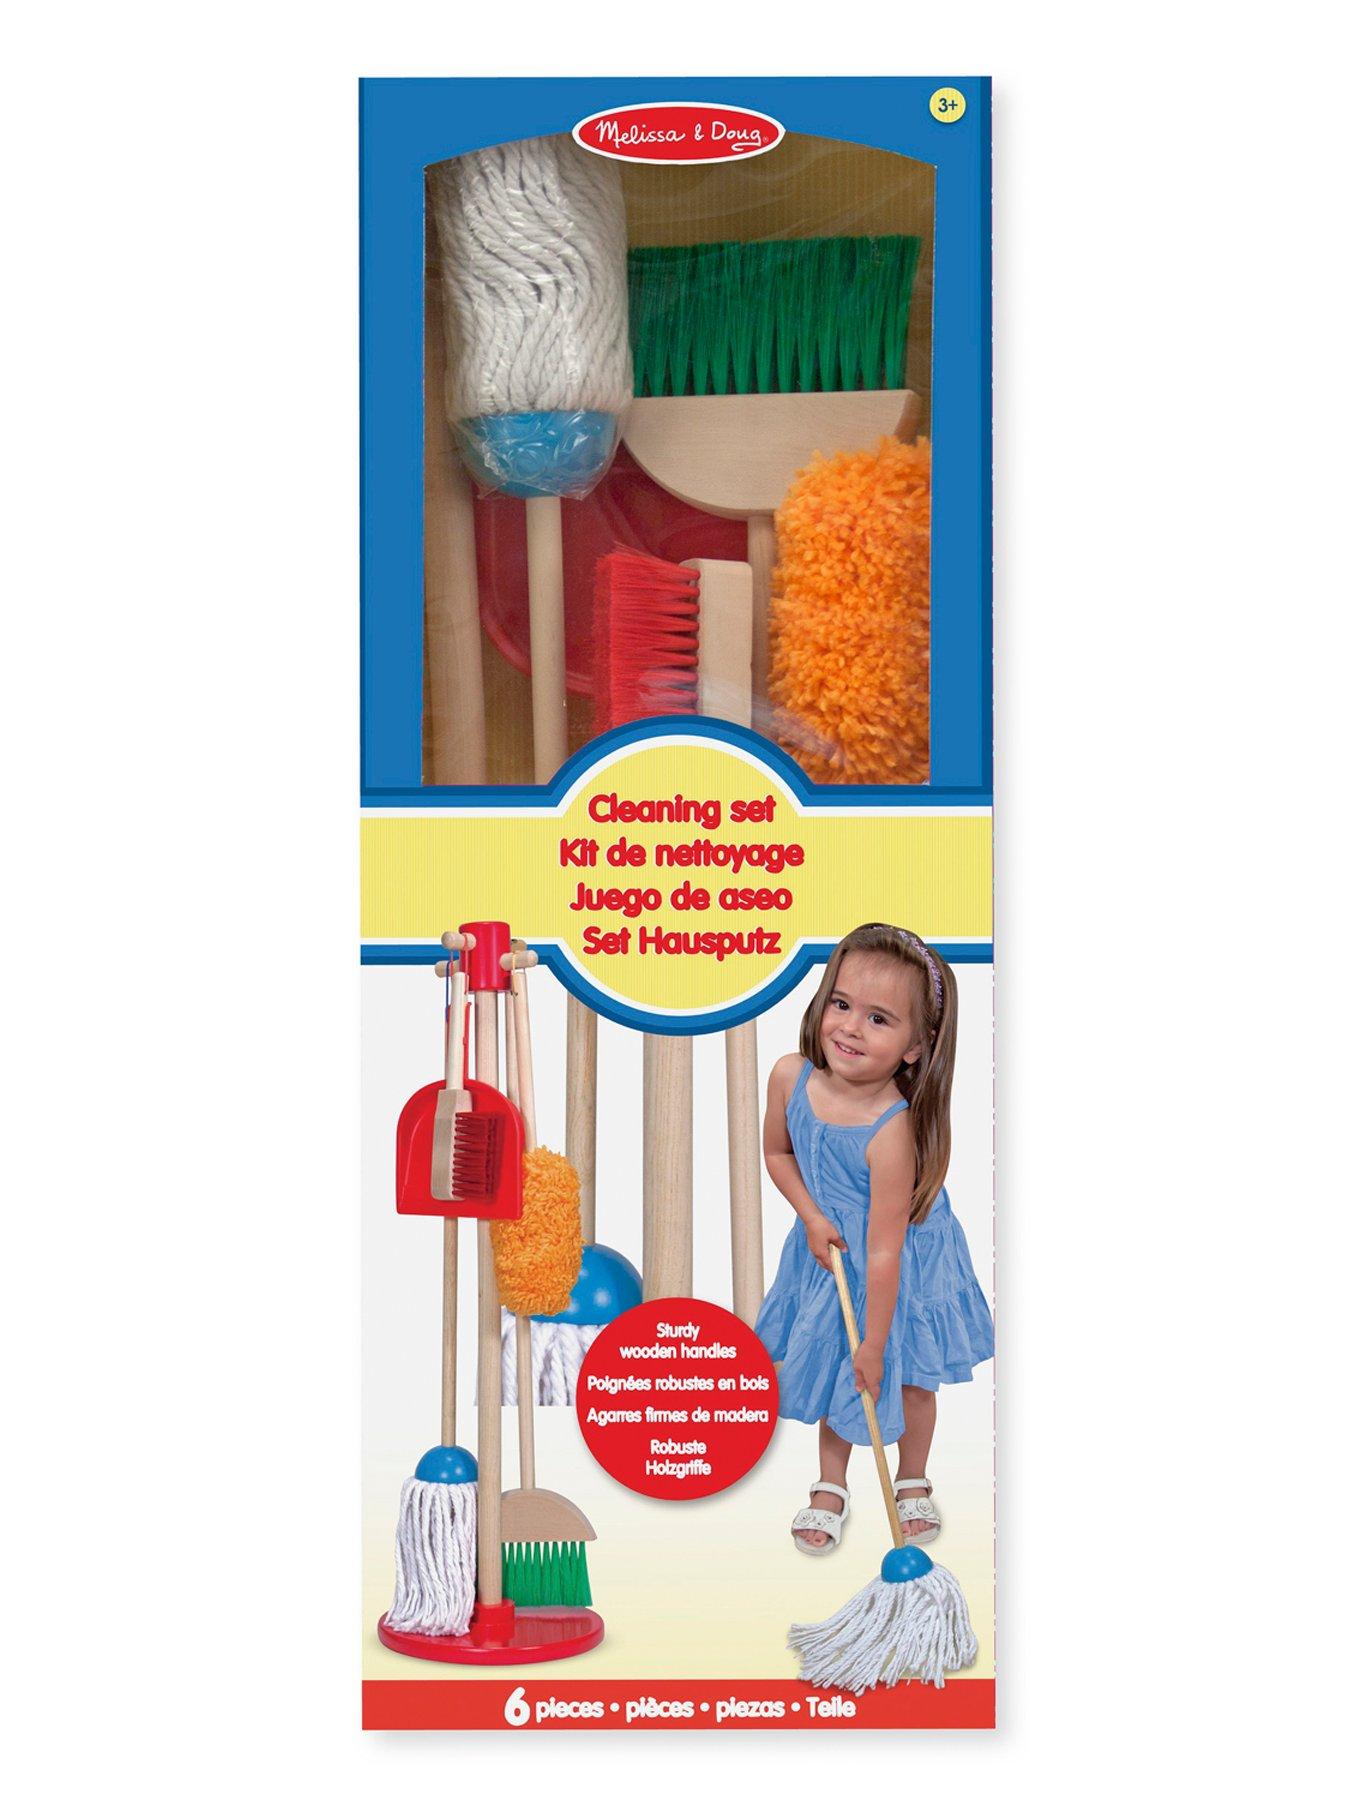 melissa and doug dust sweep mop set